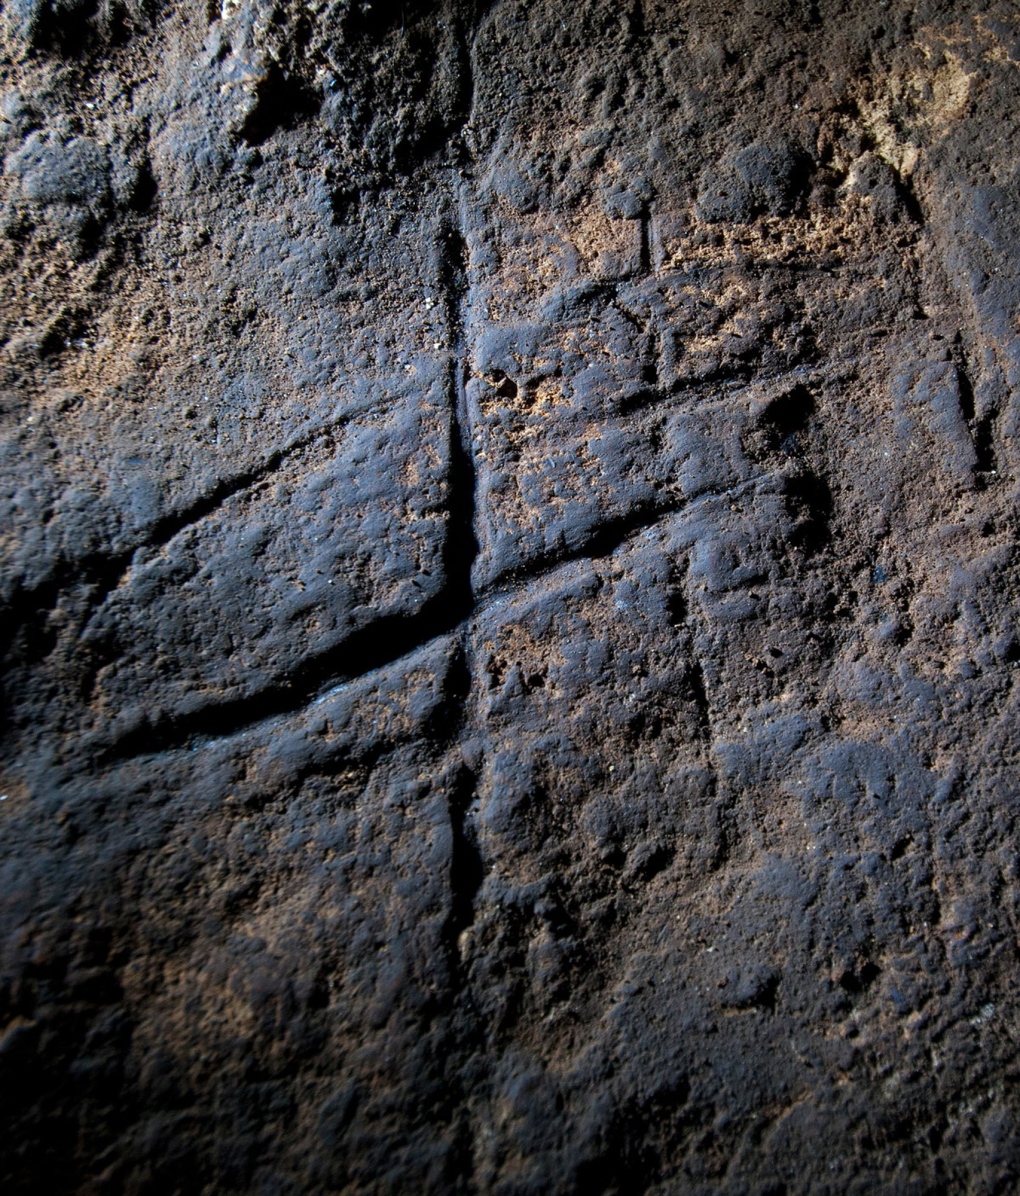 Cave art inside Gorham's Cave